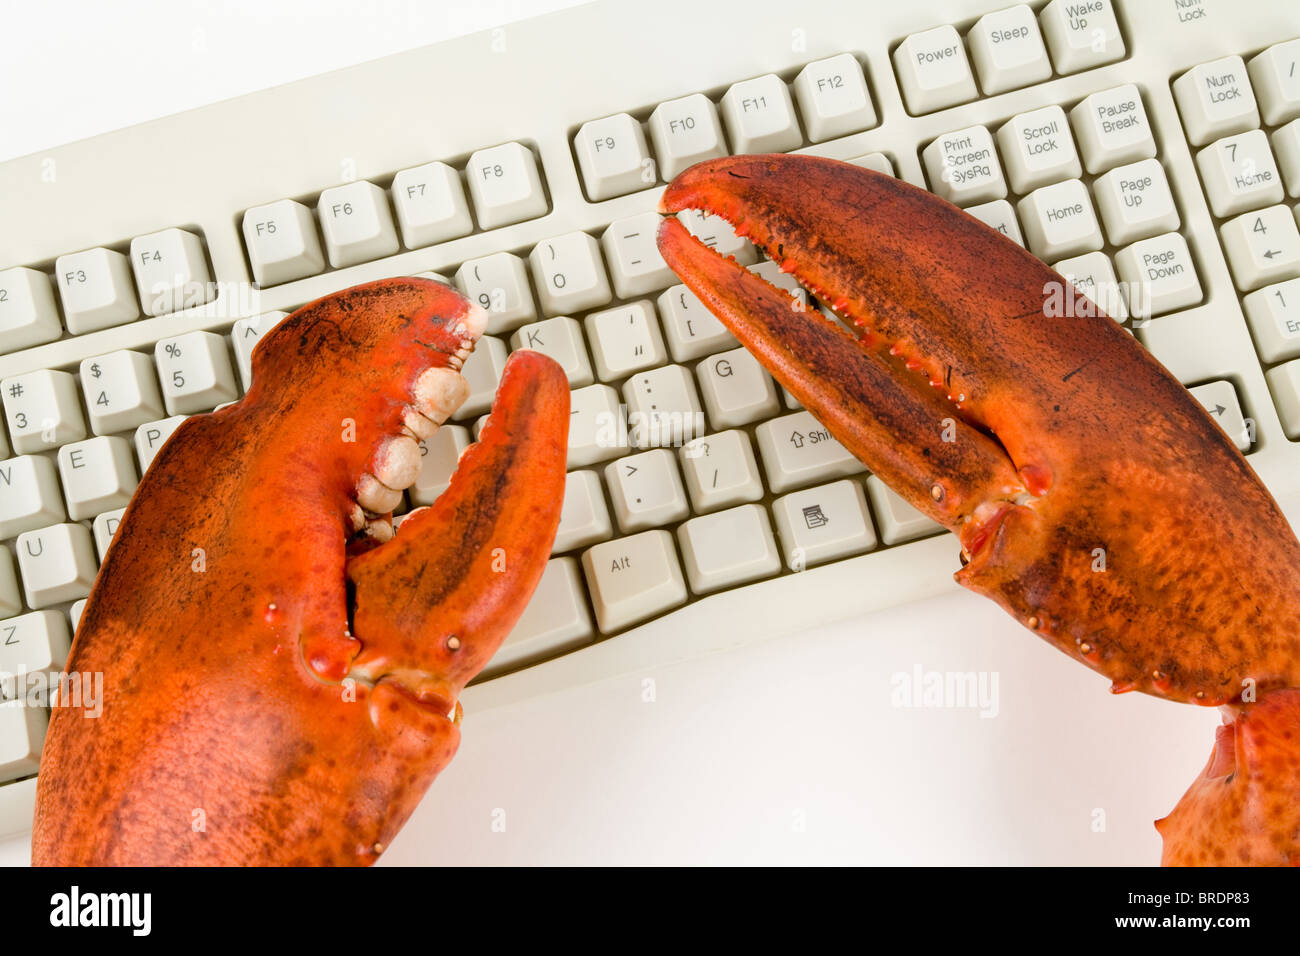 Pince de homard et clavier de l'ordinateur, du concept d'Internet, dans l'activité criminelle Banque D'Images